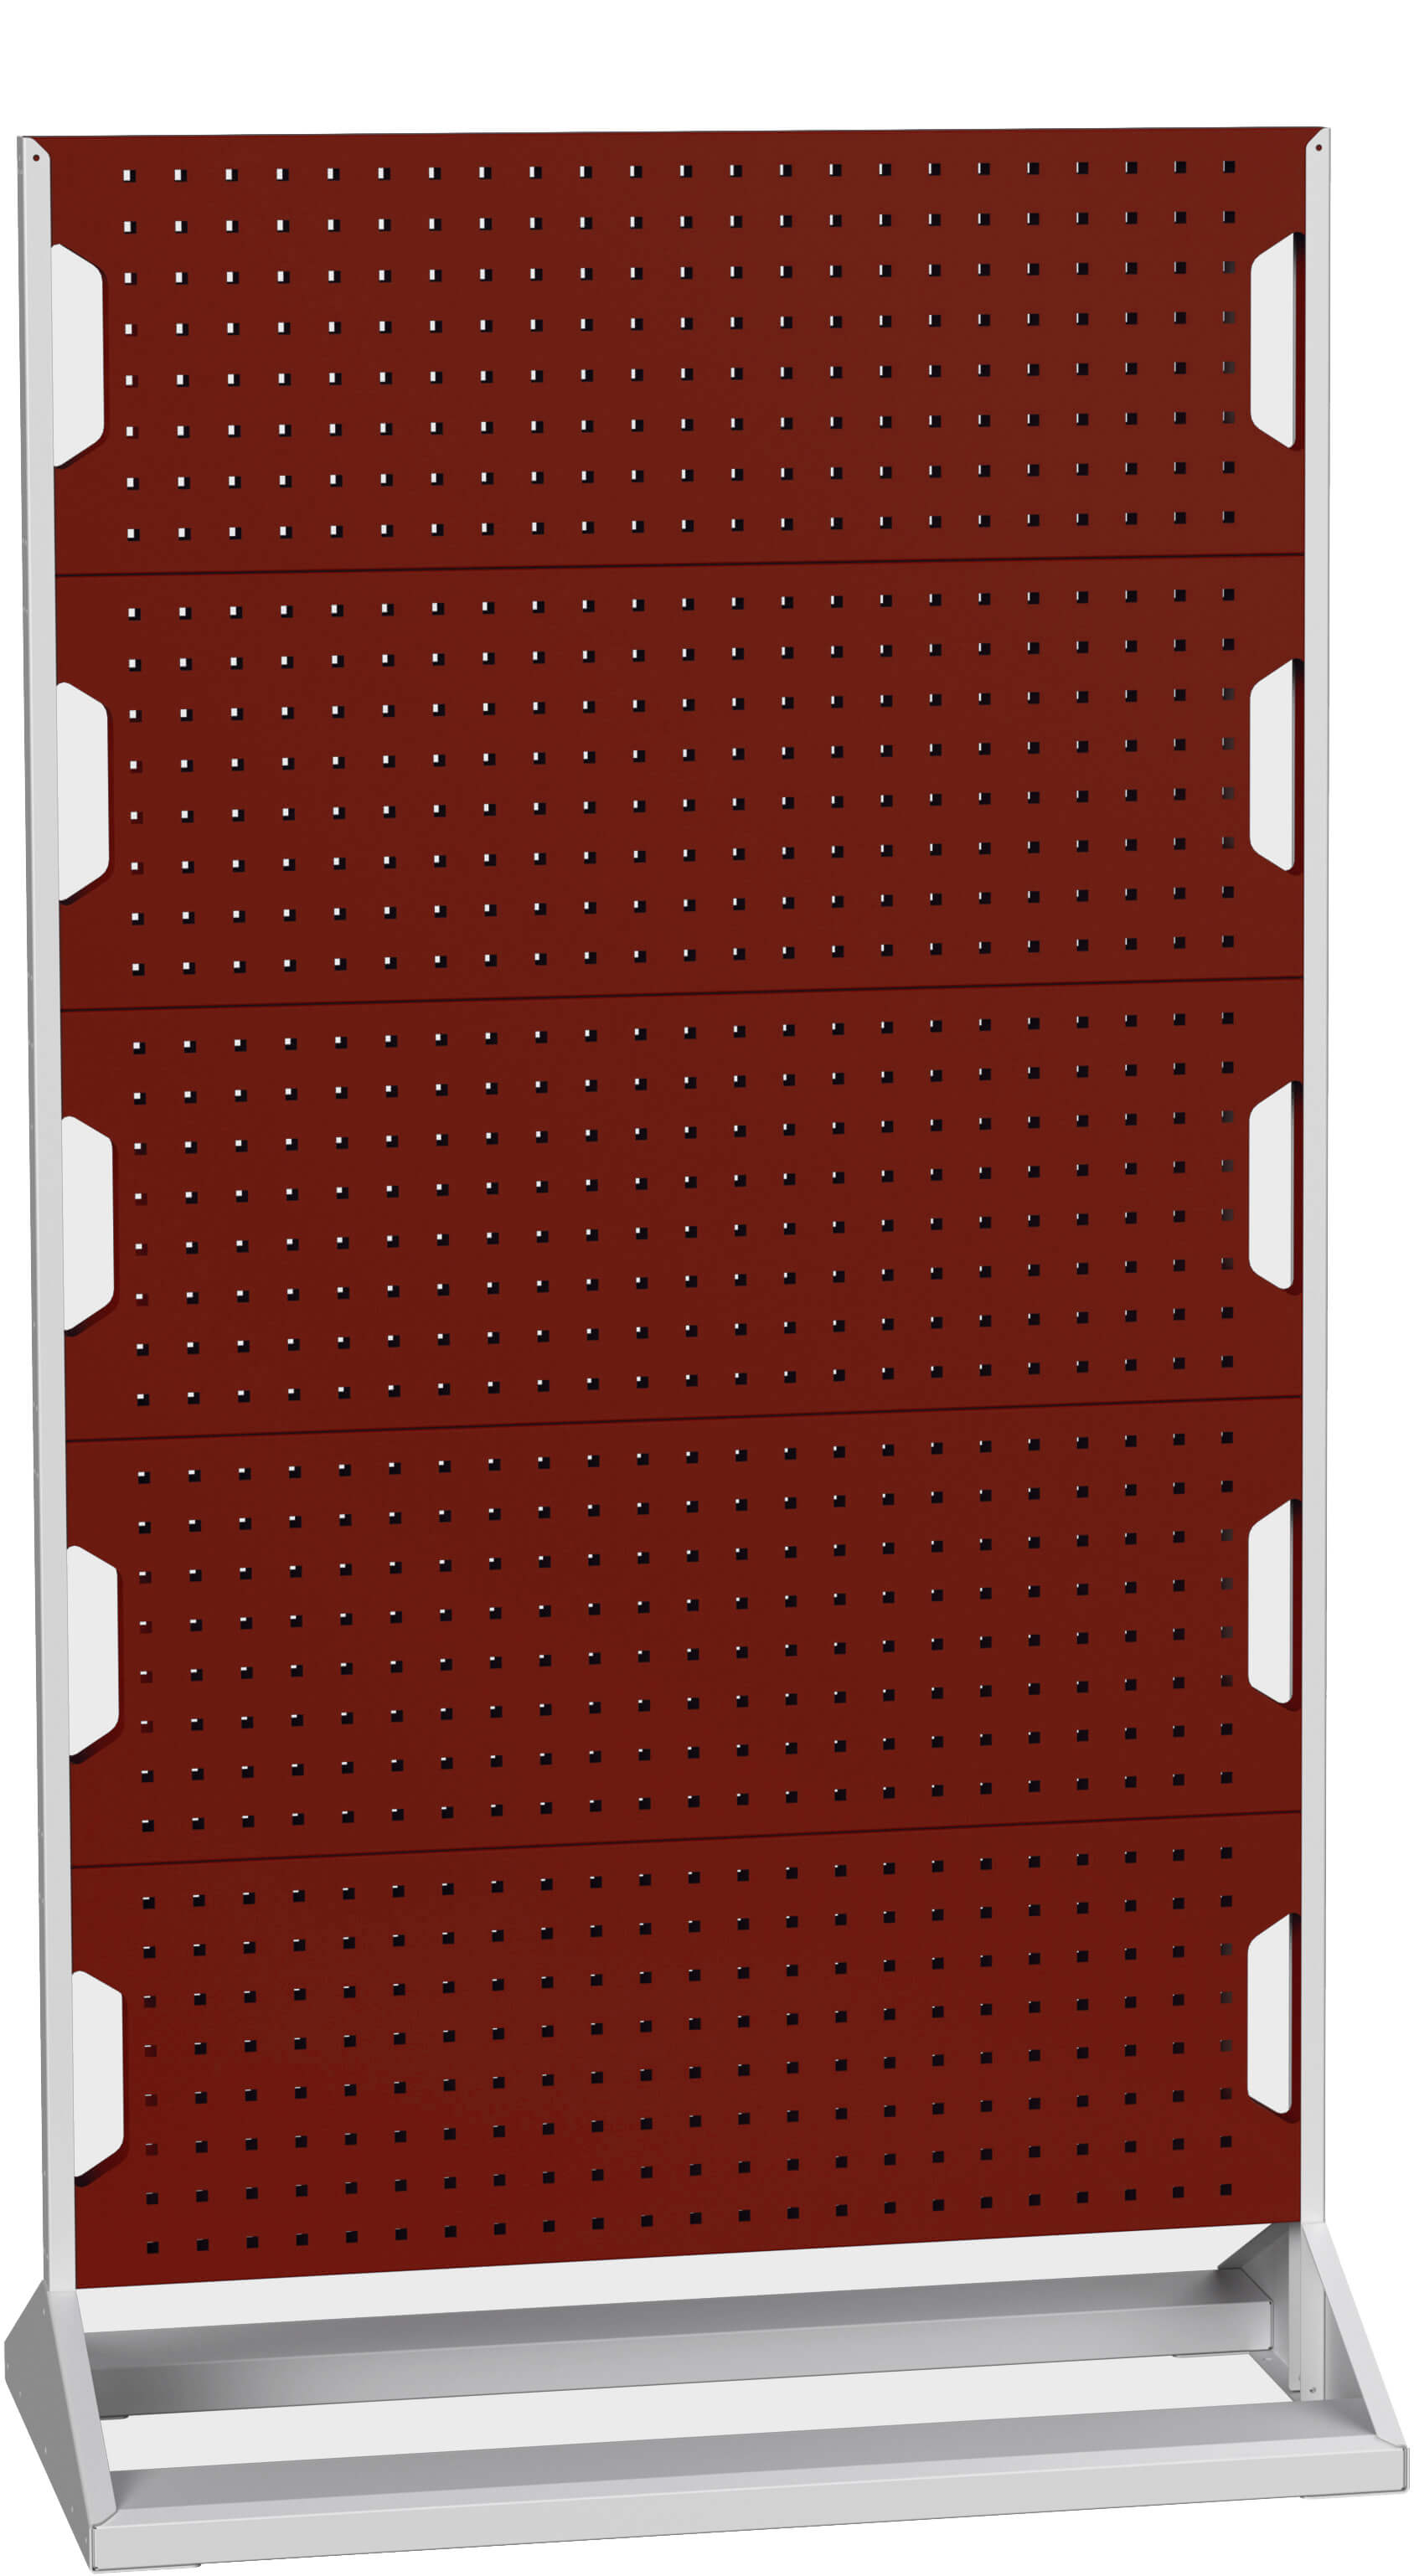 Bott Perfo Panel Rack (Double Sided) - 16917102.24V